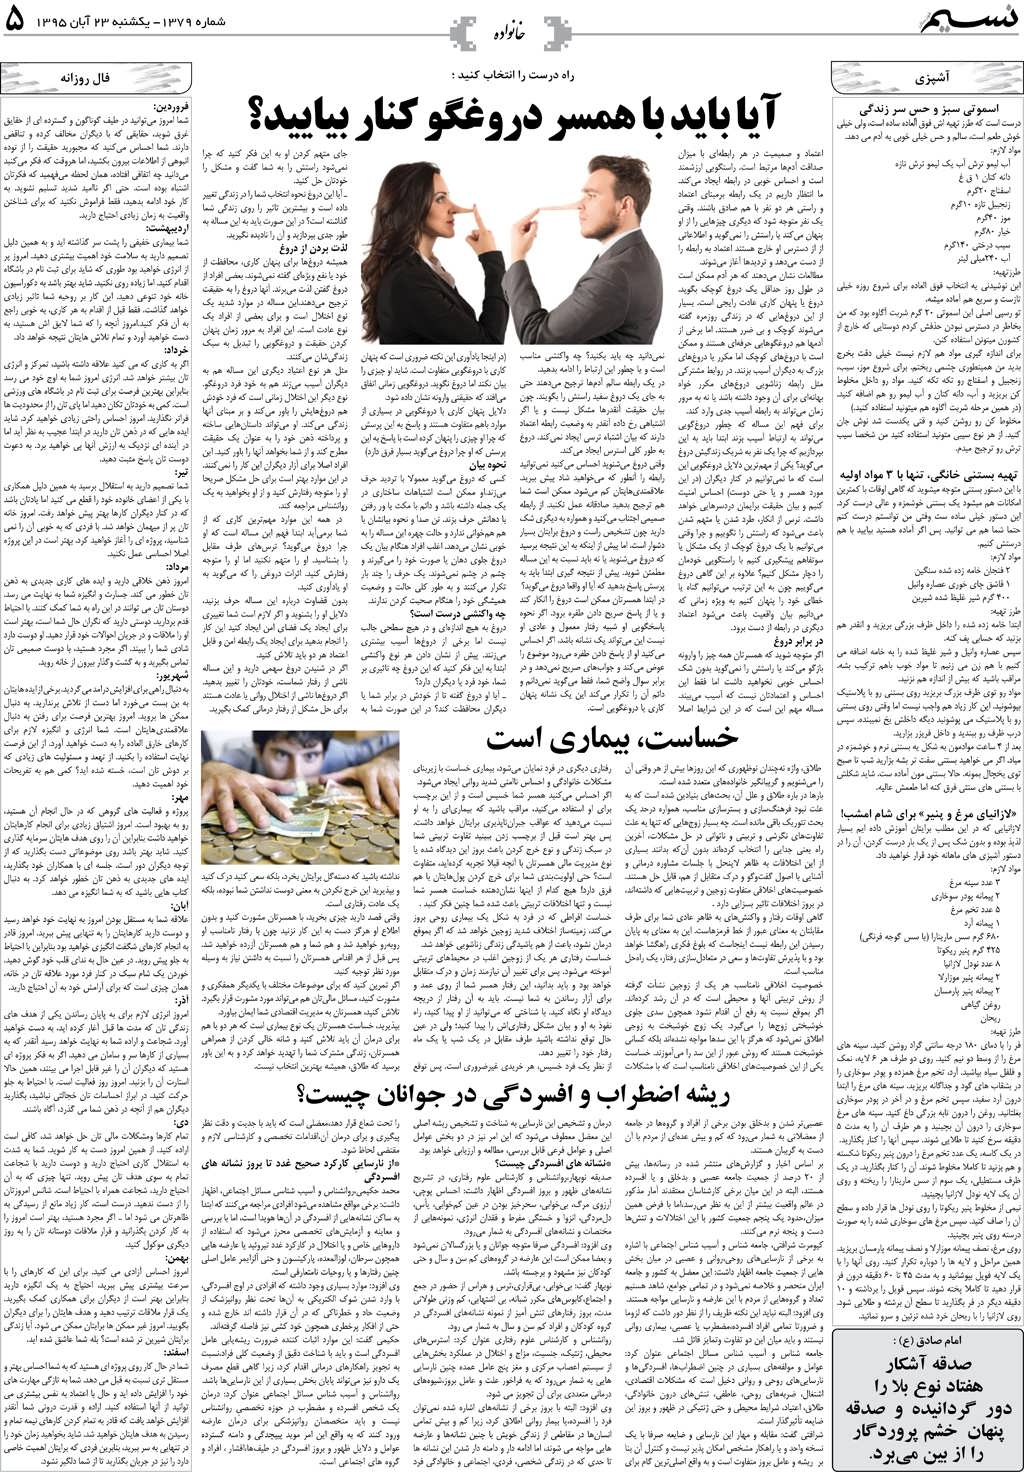 صفحه خانواده روزنامه نسیم شماره 1379